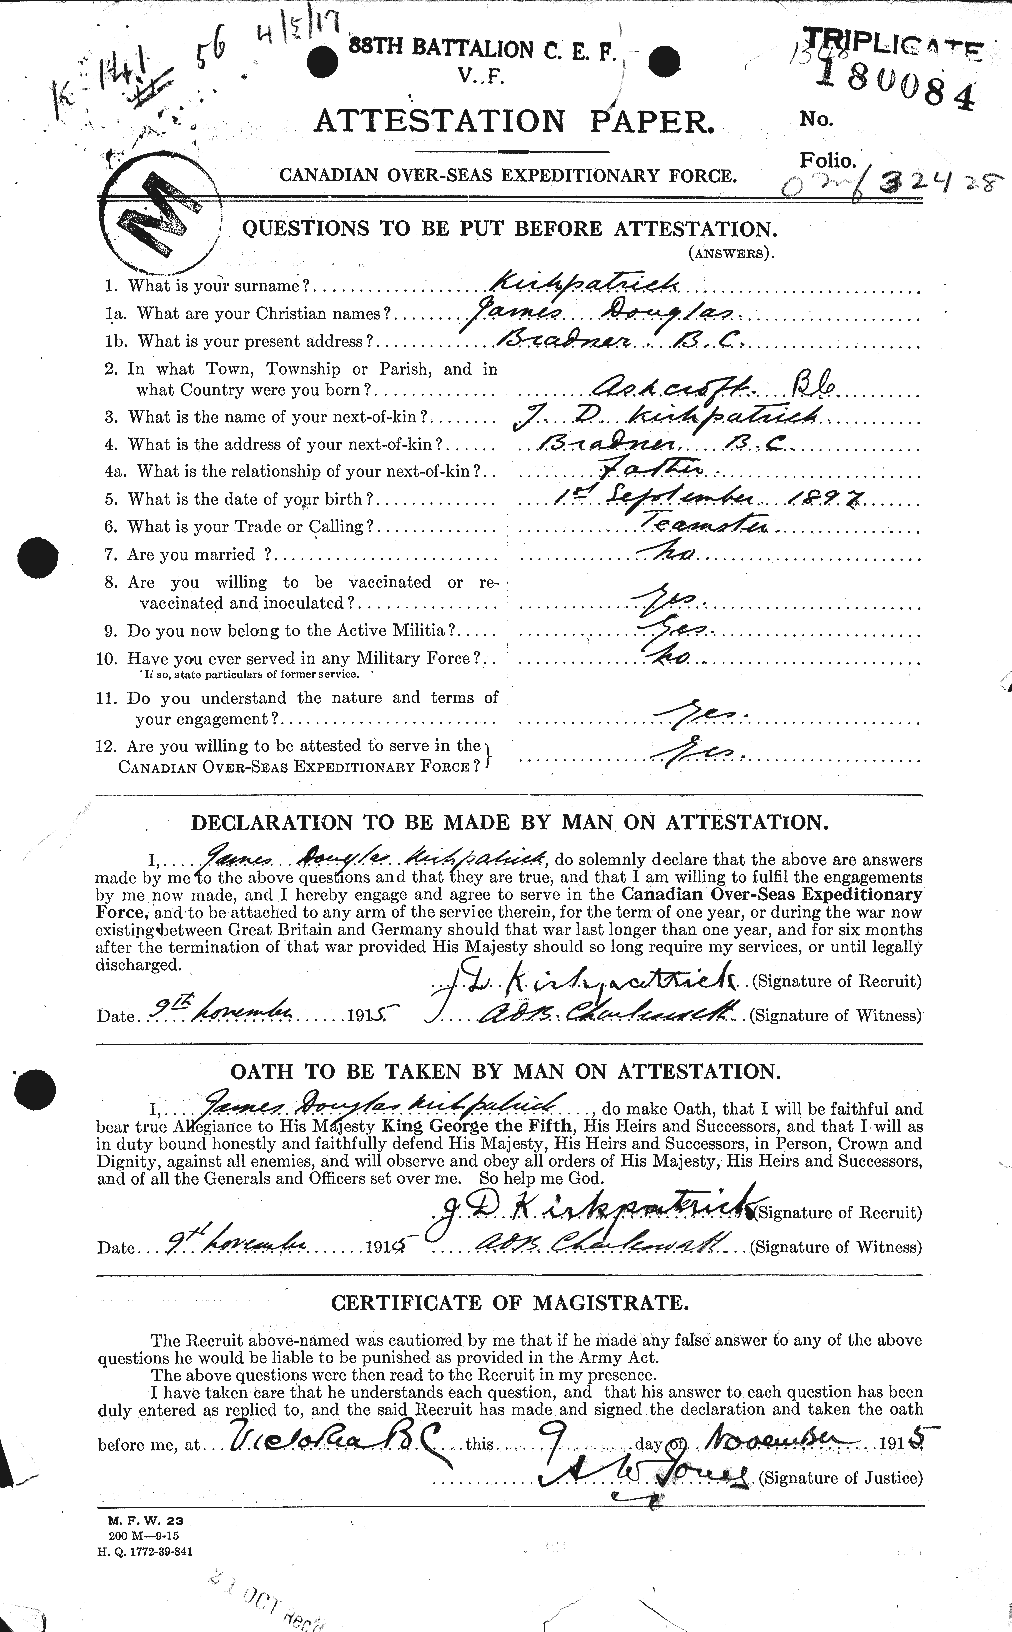 Dossiers du Personnel de la Première Guerre mondiale - CEC 436075a